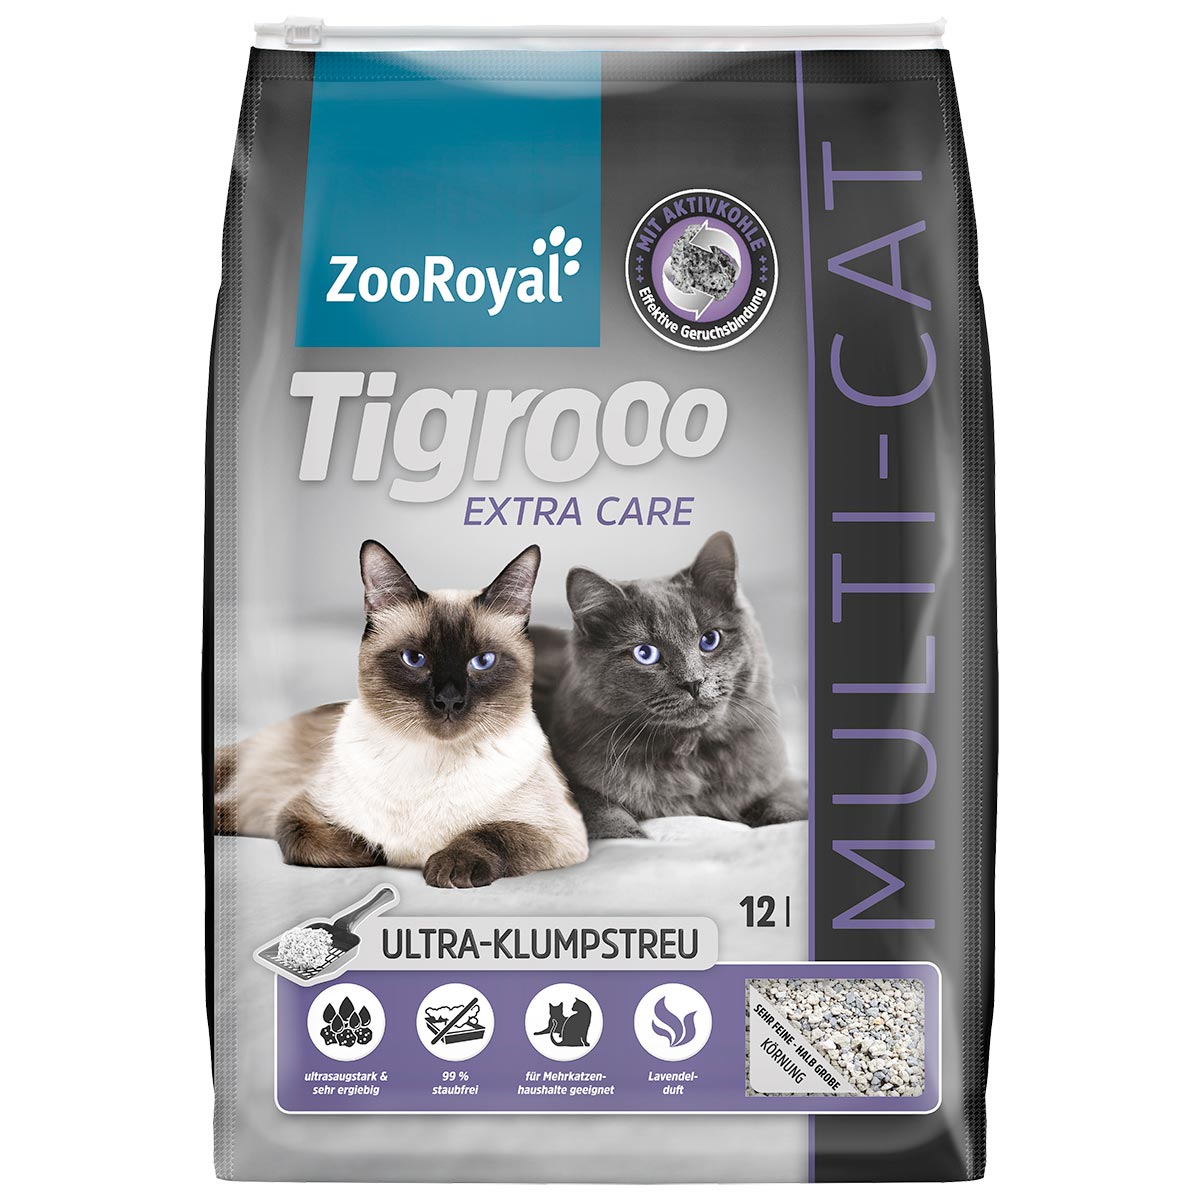 tigrooo multicat 12l